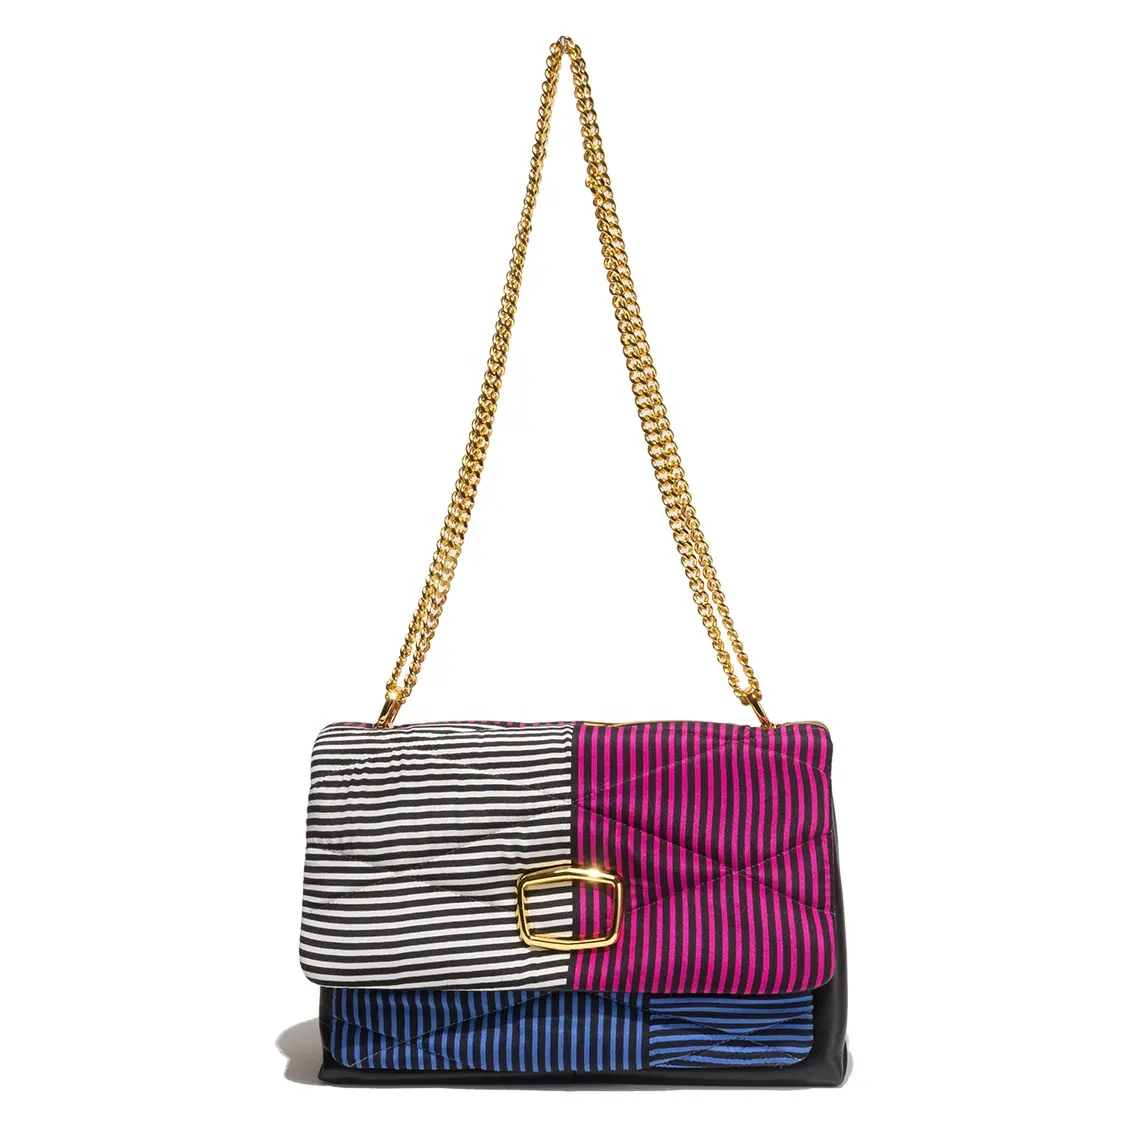 Женская уникальная модная роскошная сумка через плечо, сделанный в Италии с фирменным винтажным шелковым шарфом в разноцветную полоску